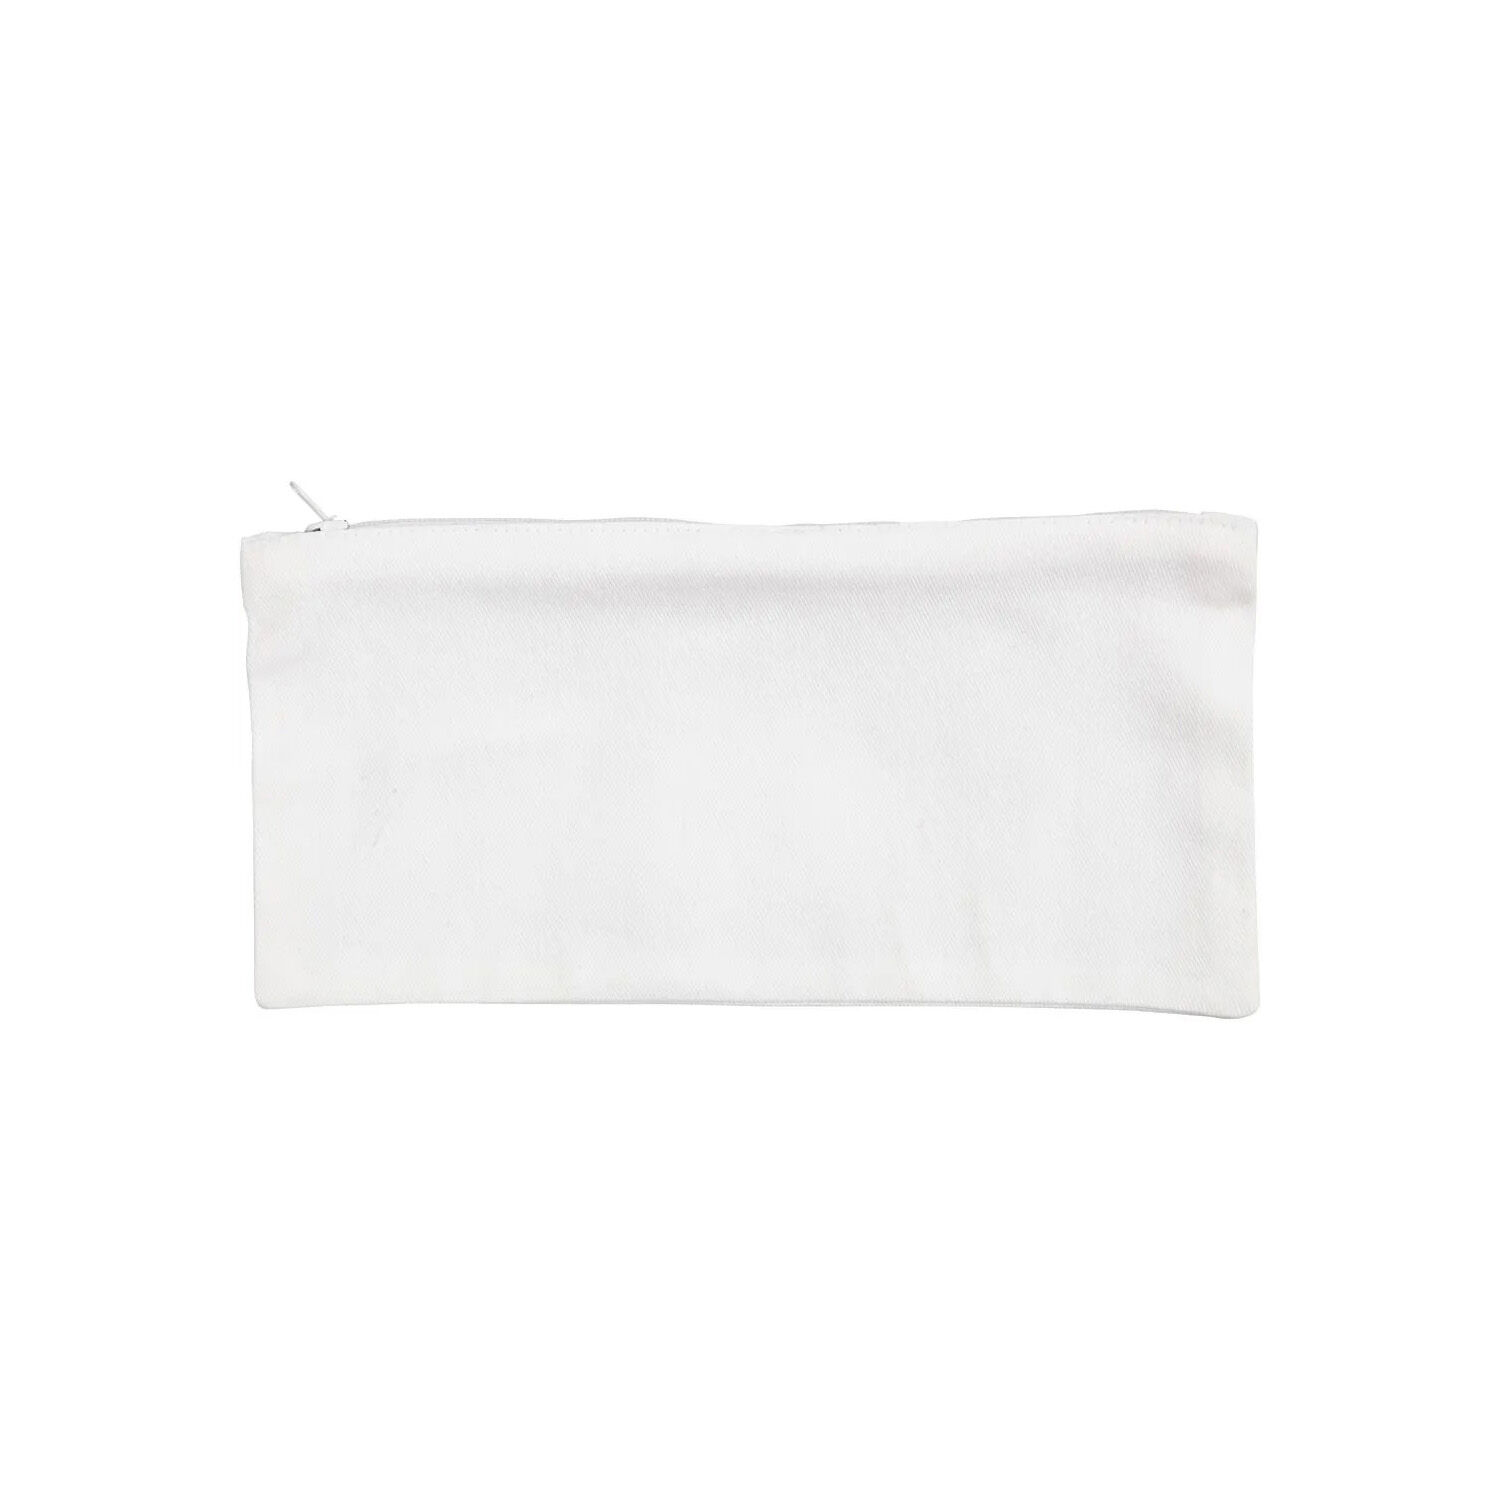 NEU Mäppchen mit Reißverschluss / Federmäppchen, 11x23 cm, Weiß